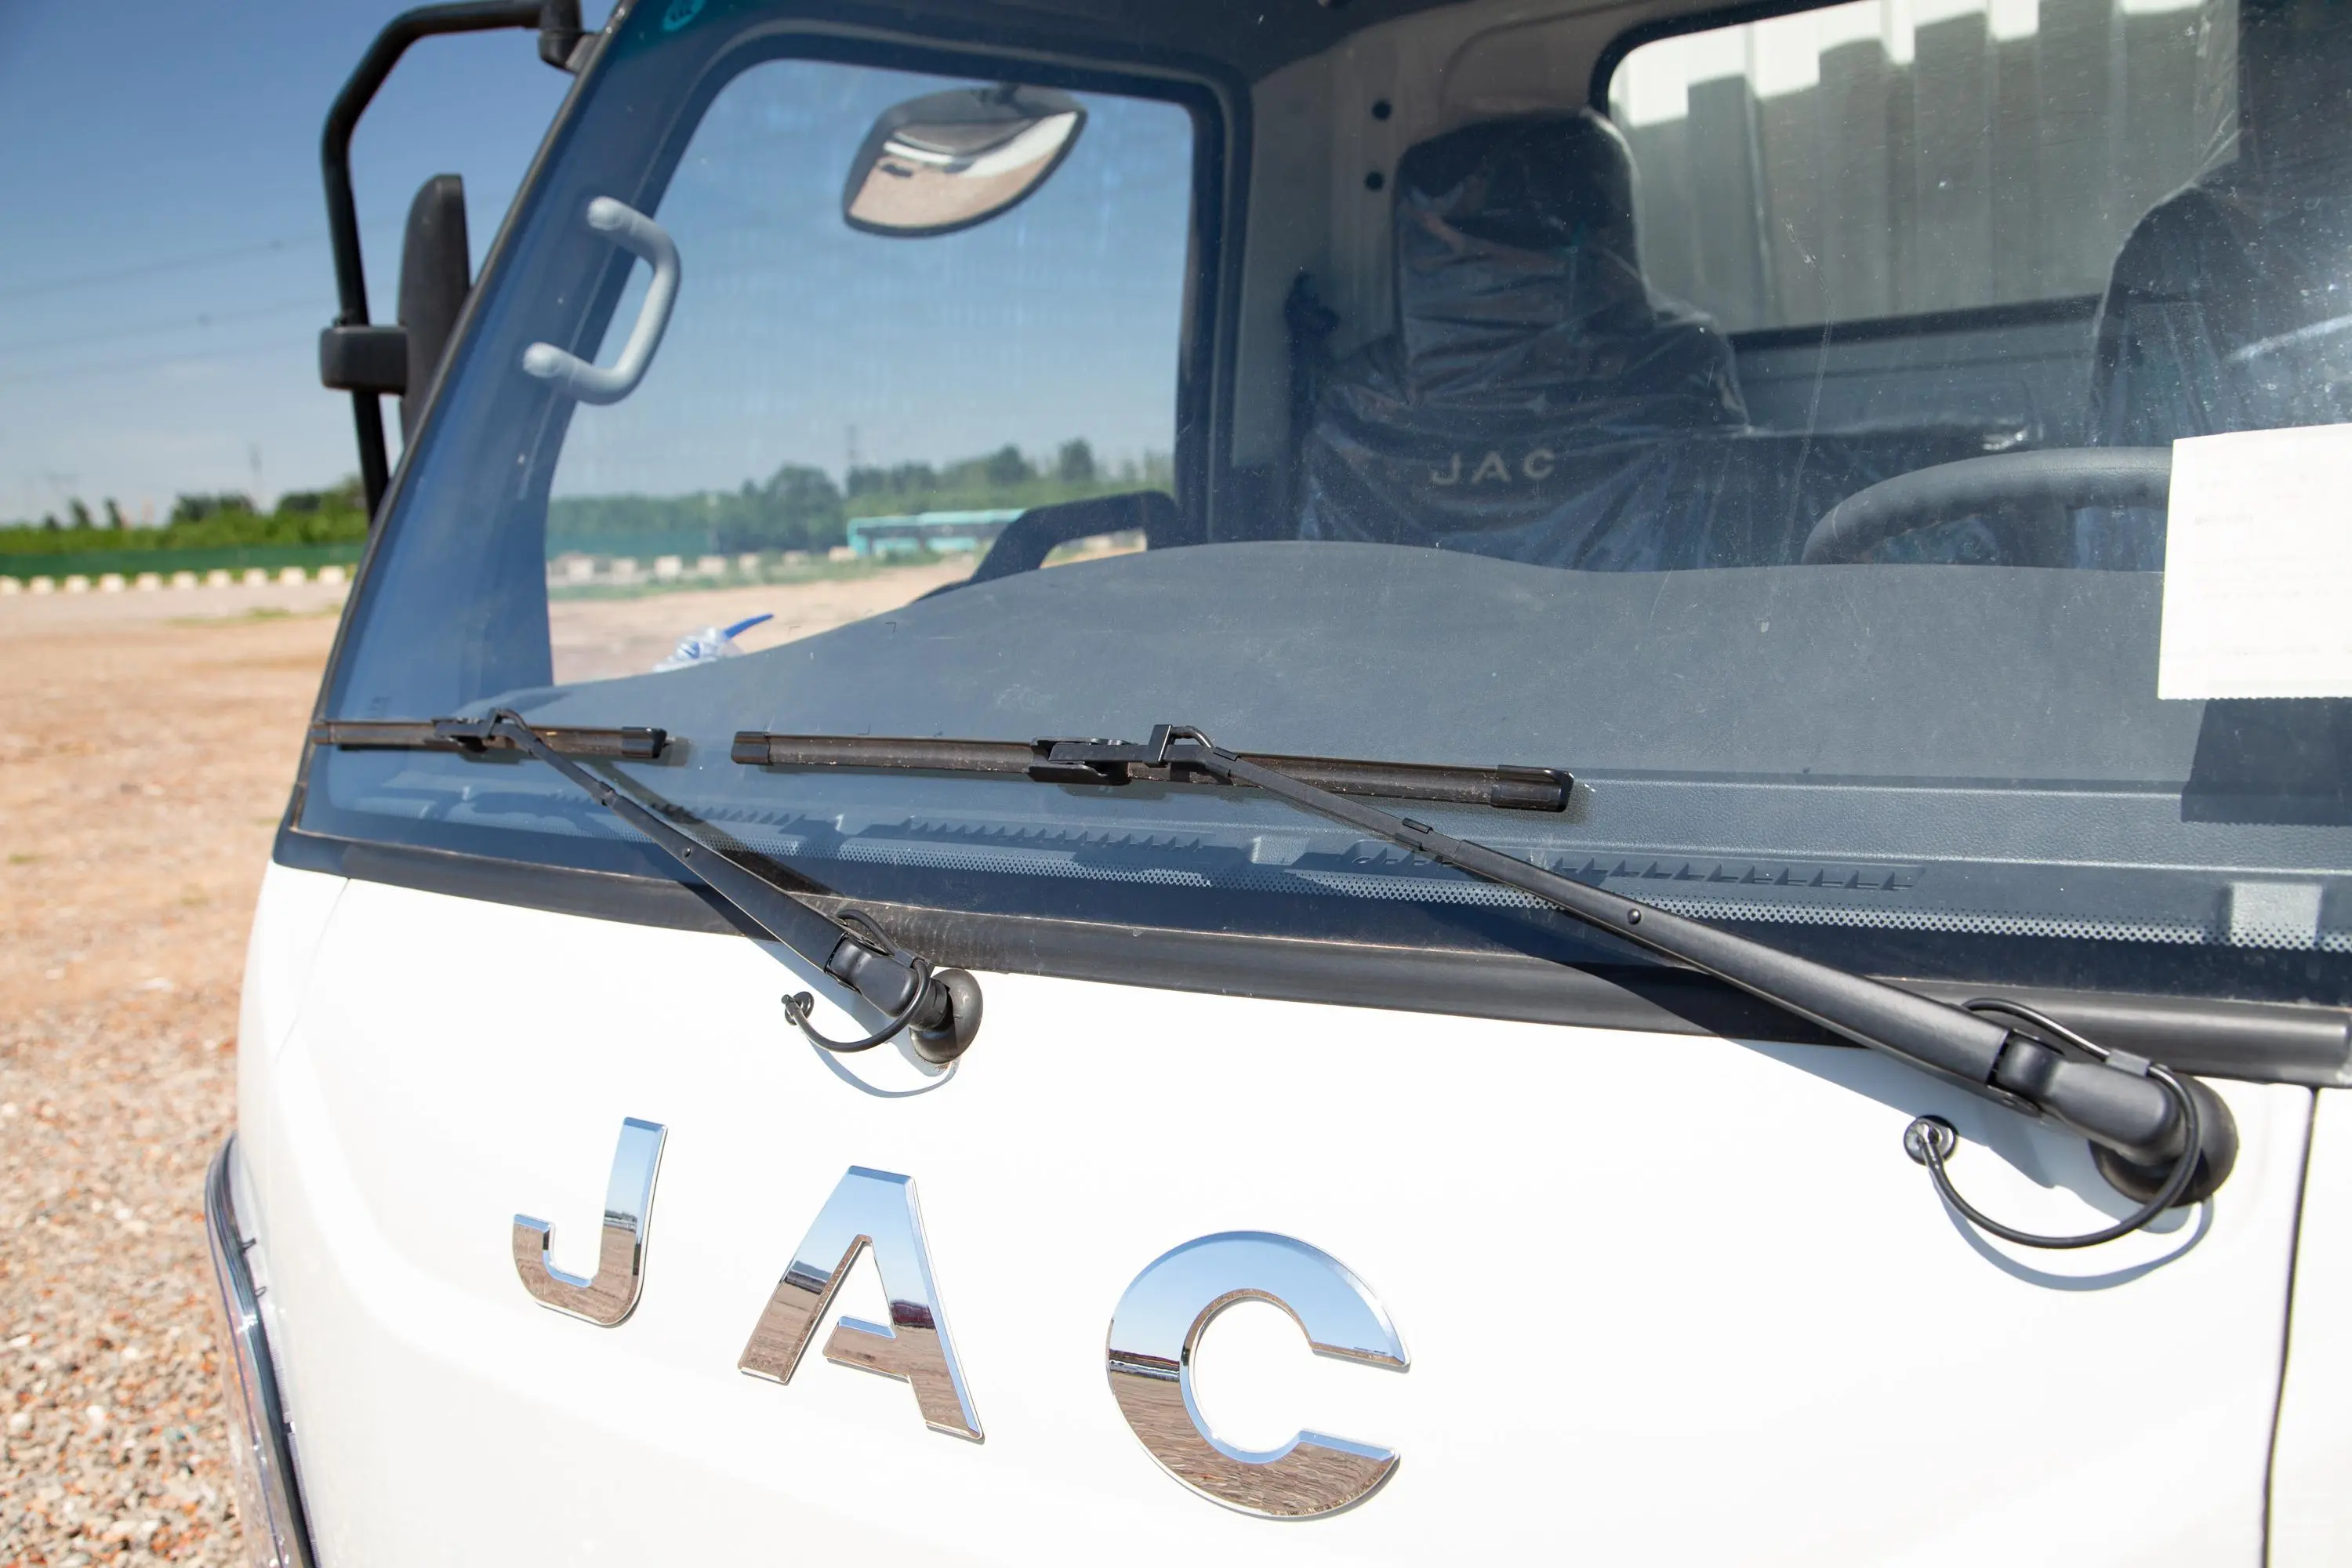 康铃J3J3安徽全柴 2.3L 98马力 轴距2900  单排箱式轻卡 柴油 国VI雨刷器